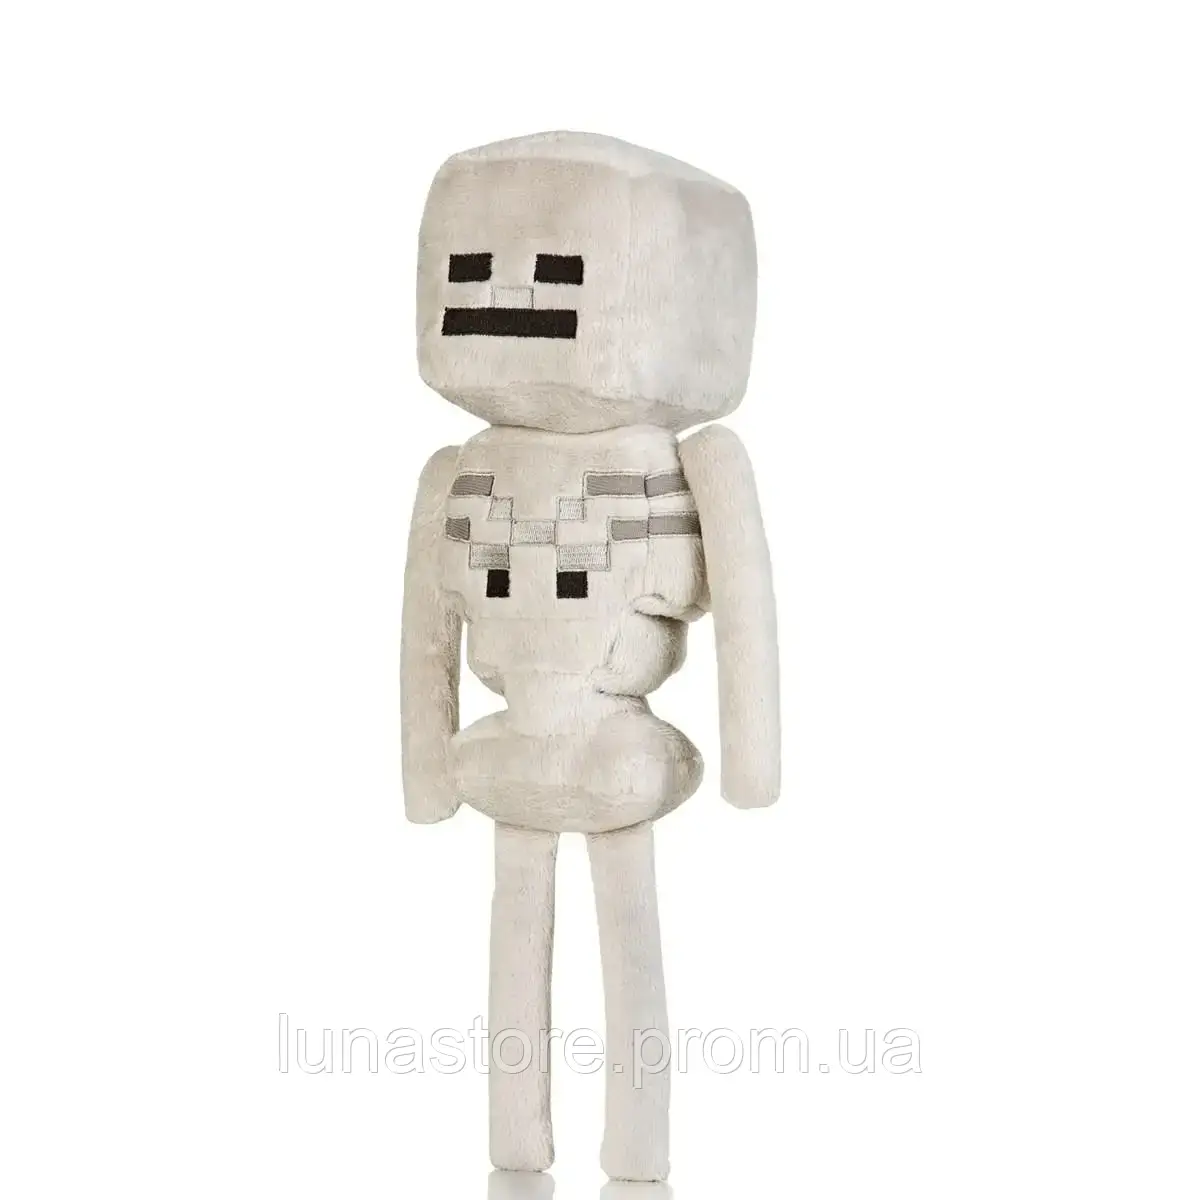 М'яка дитяча іграшка, персонаж Скелет із гри Майнкрафт 25 см Skeleton Plush Minecraft герої